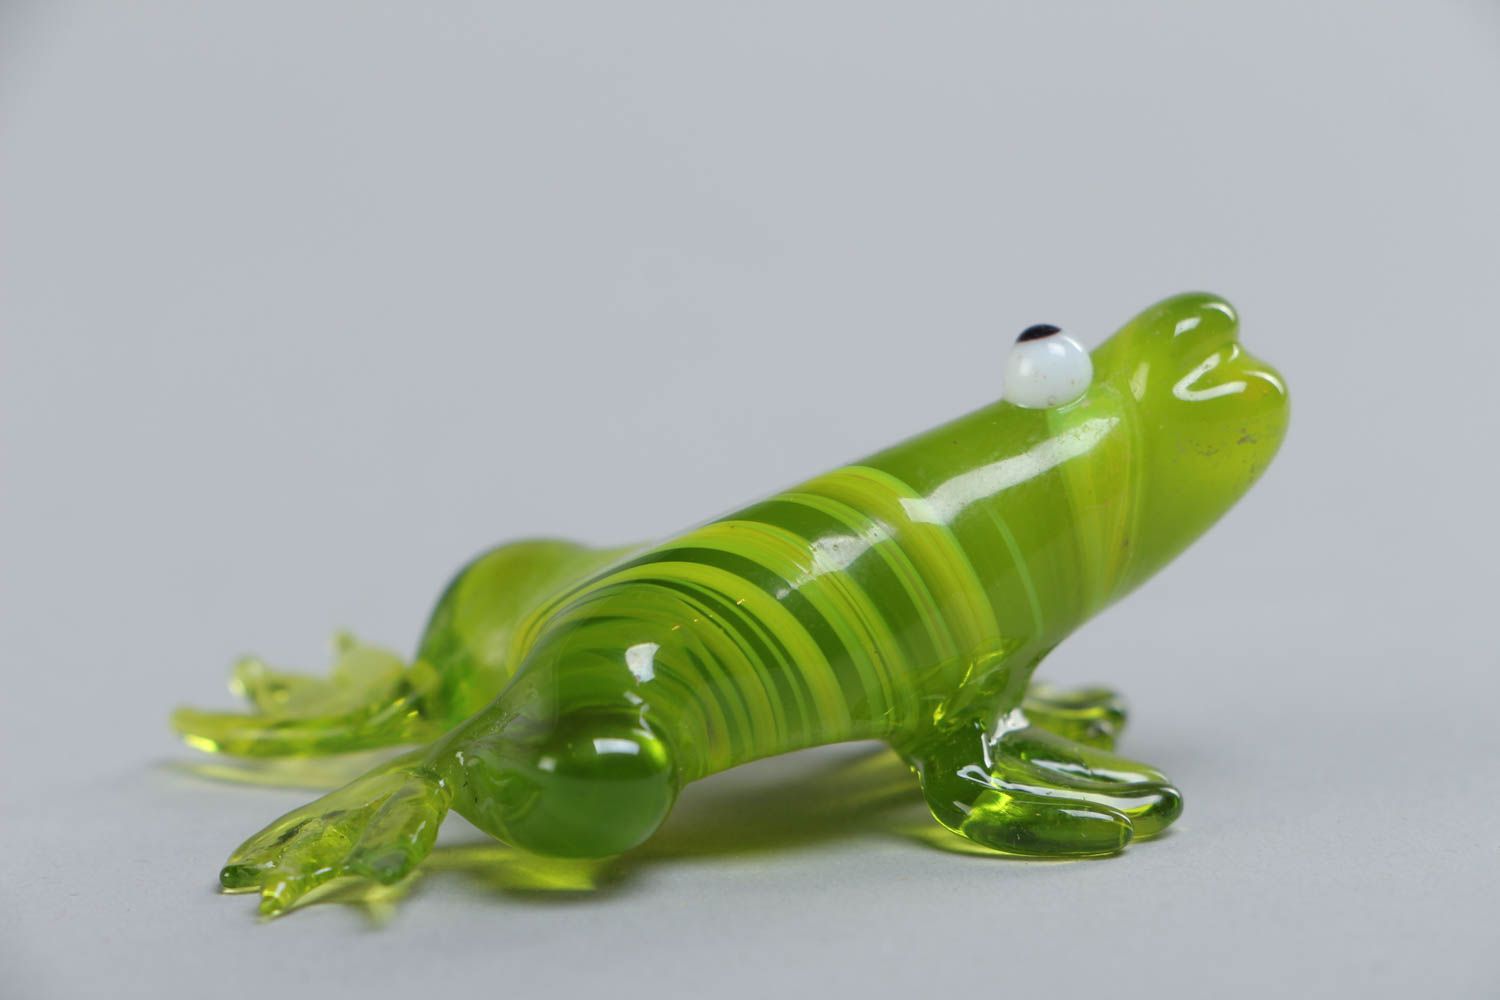 Салатовая фигурка лягушки из стекла в технике лэмпворк ручной работы красивая маленькая фото 2